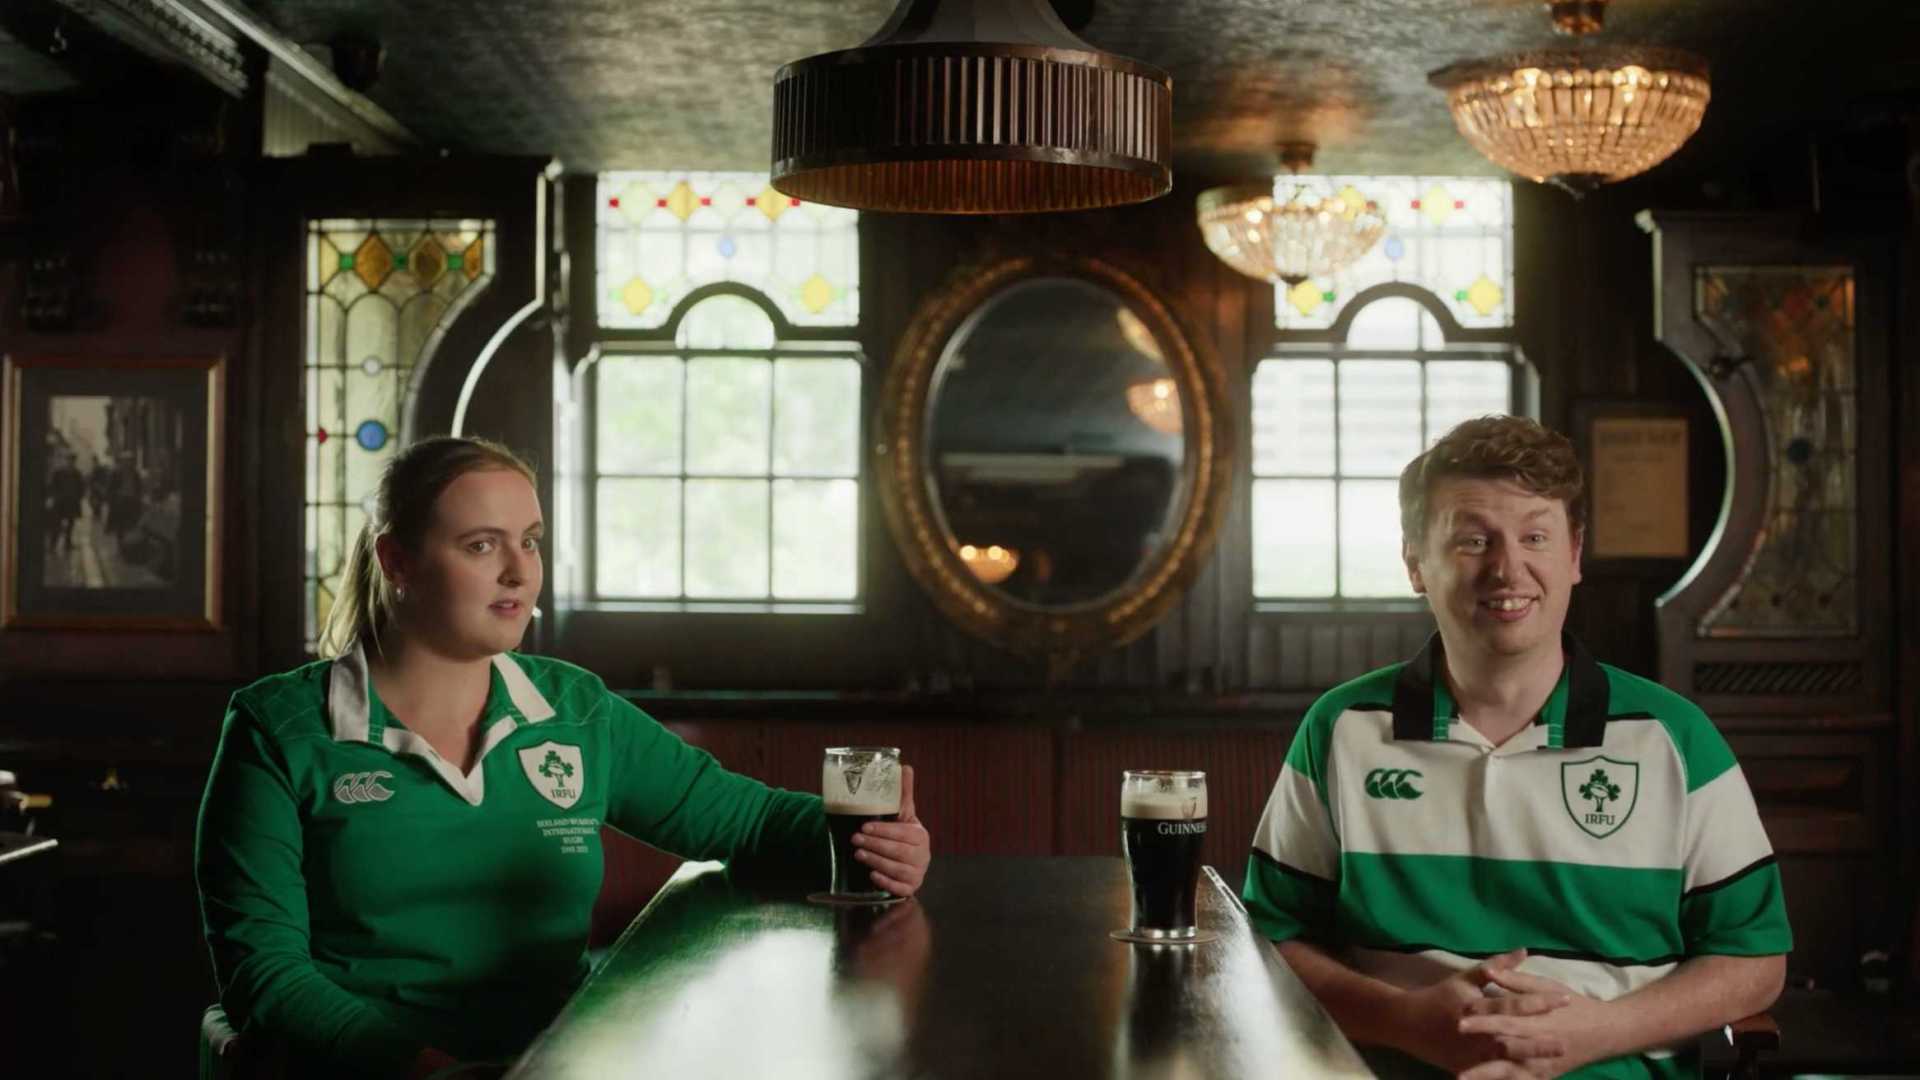 爱尔兰橄榄球联盟 IRFU创意宣传广告《别迷信》